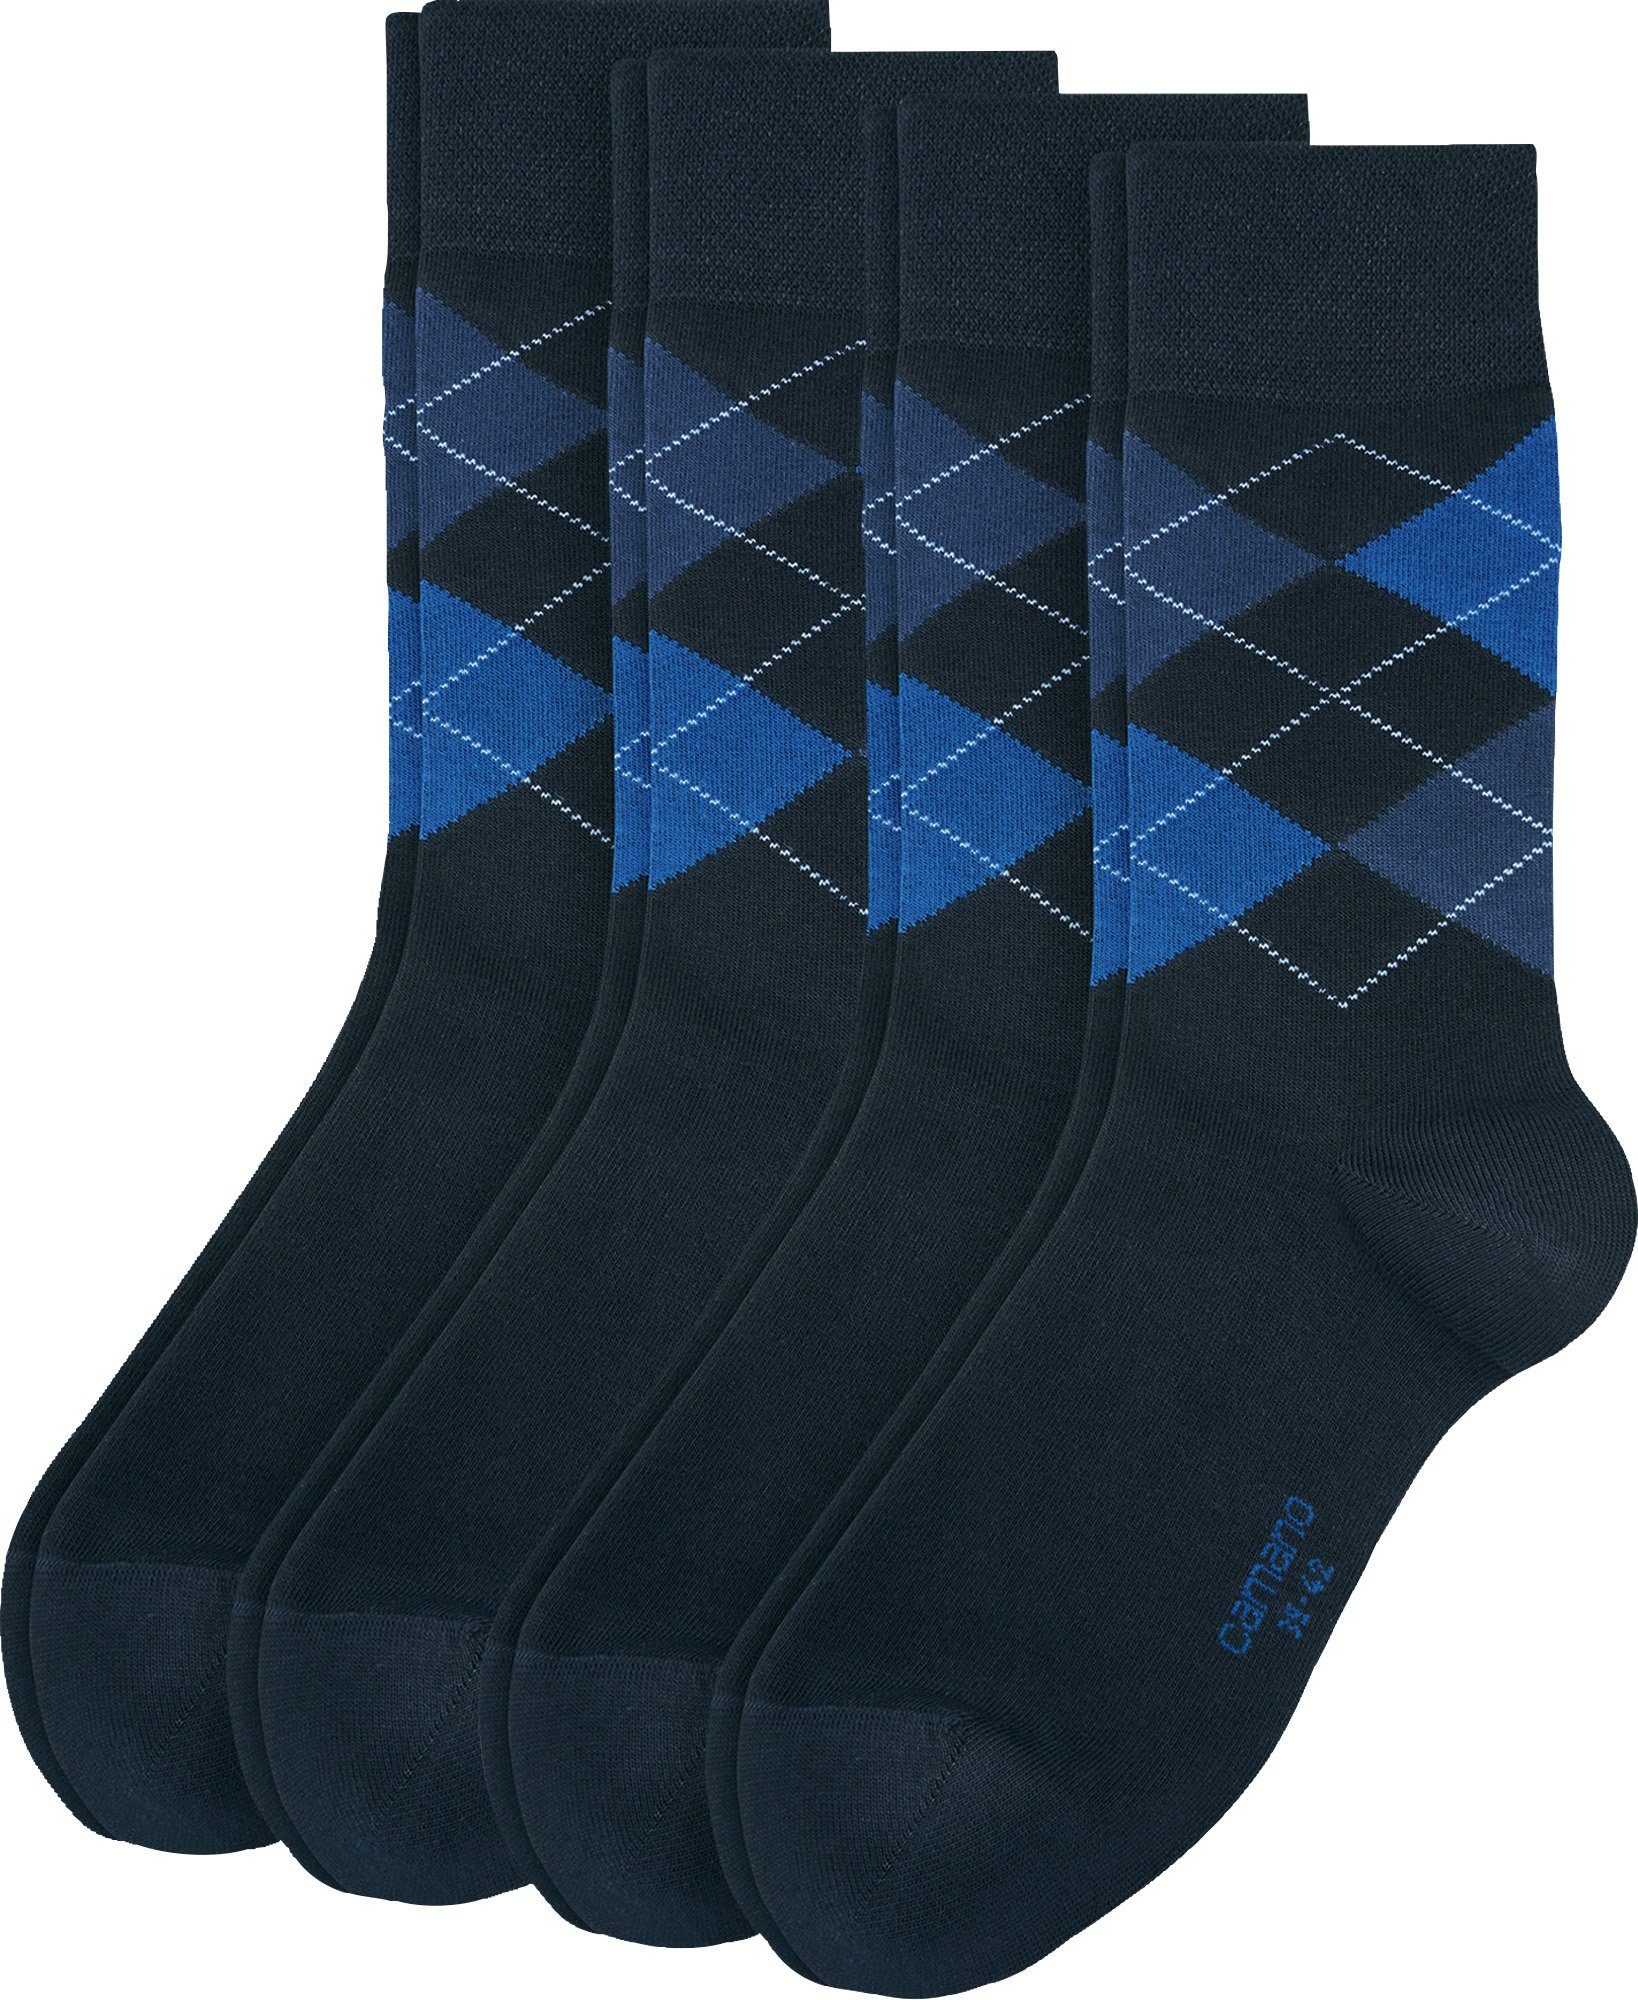 Camano Socken Herren-Socken 4 Paar gemustert blau